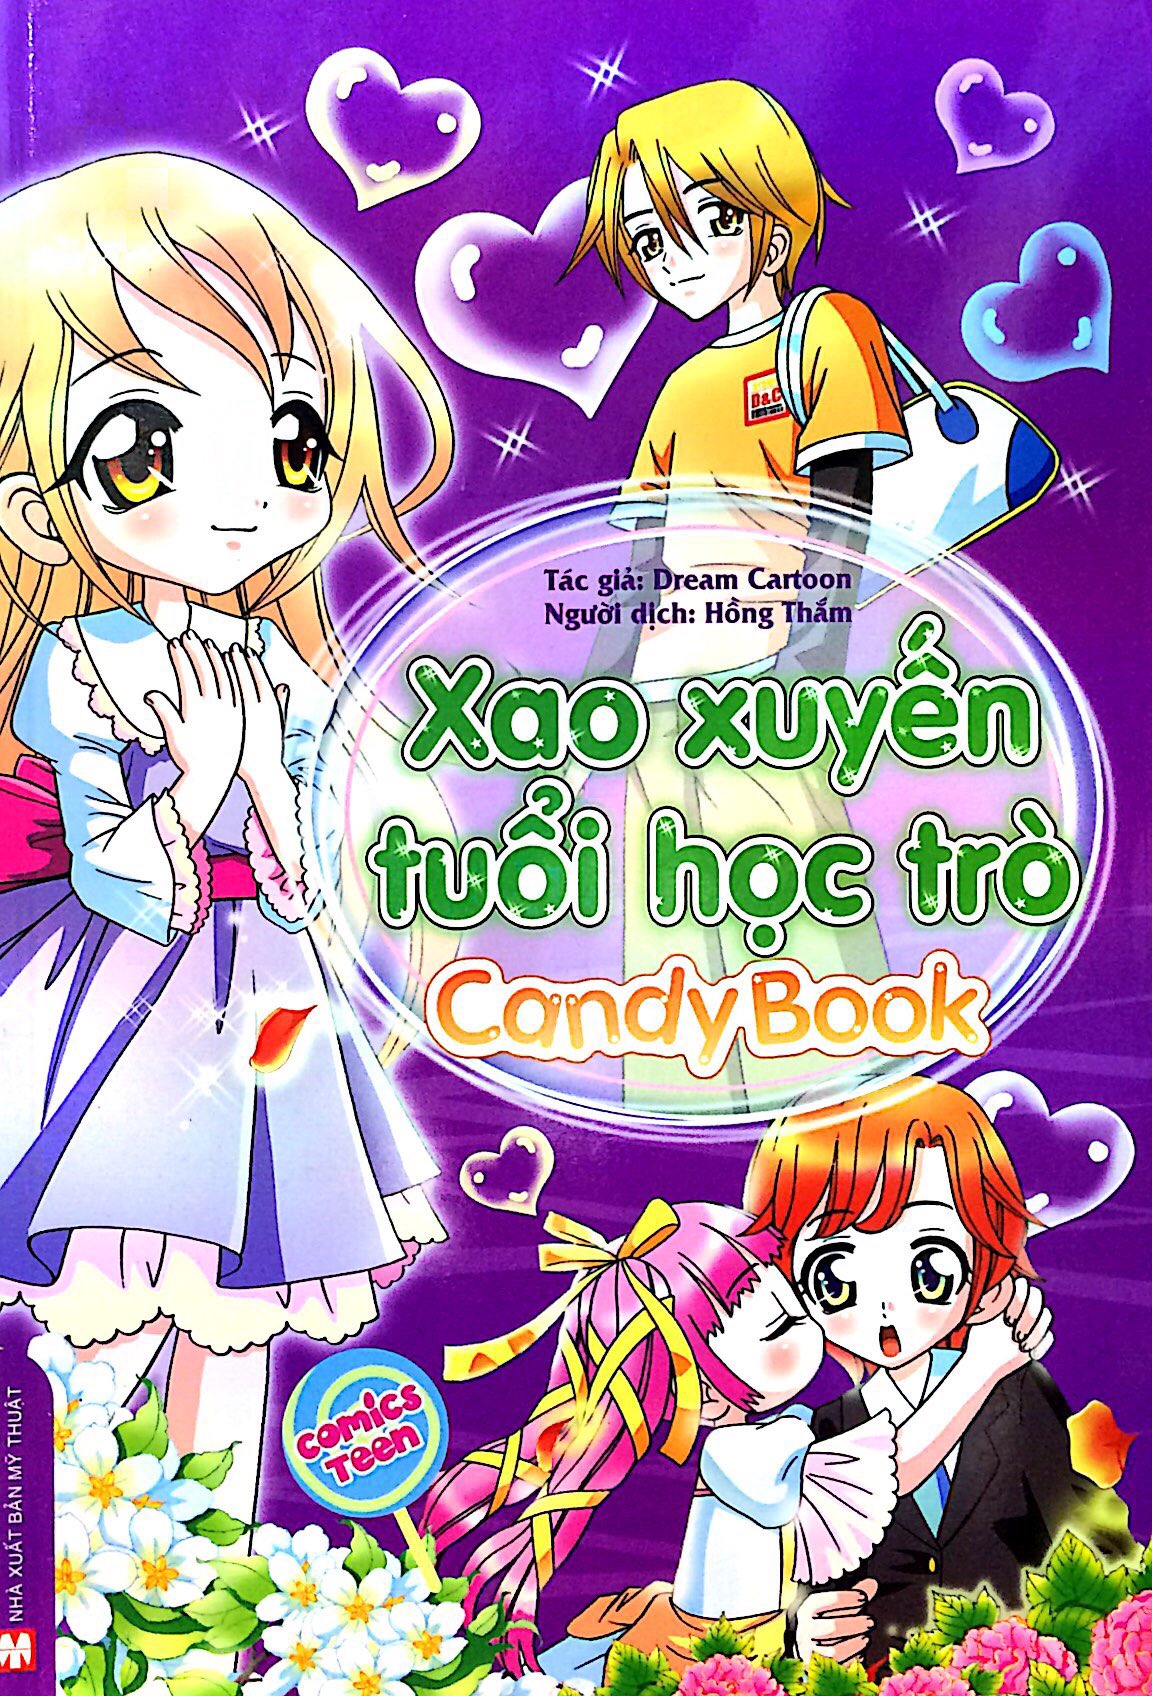 Xao Xuyến Tuổi Học Trò - Candy Book PDF